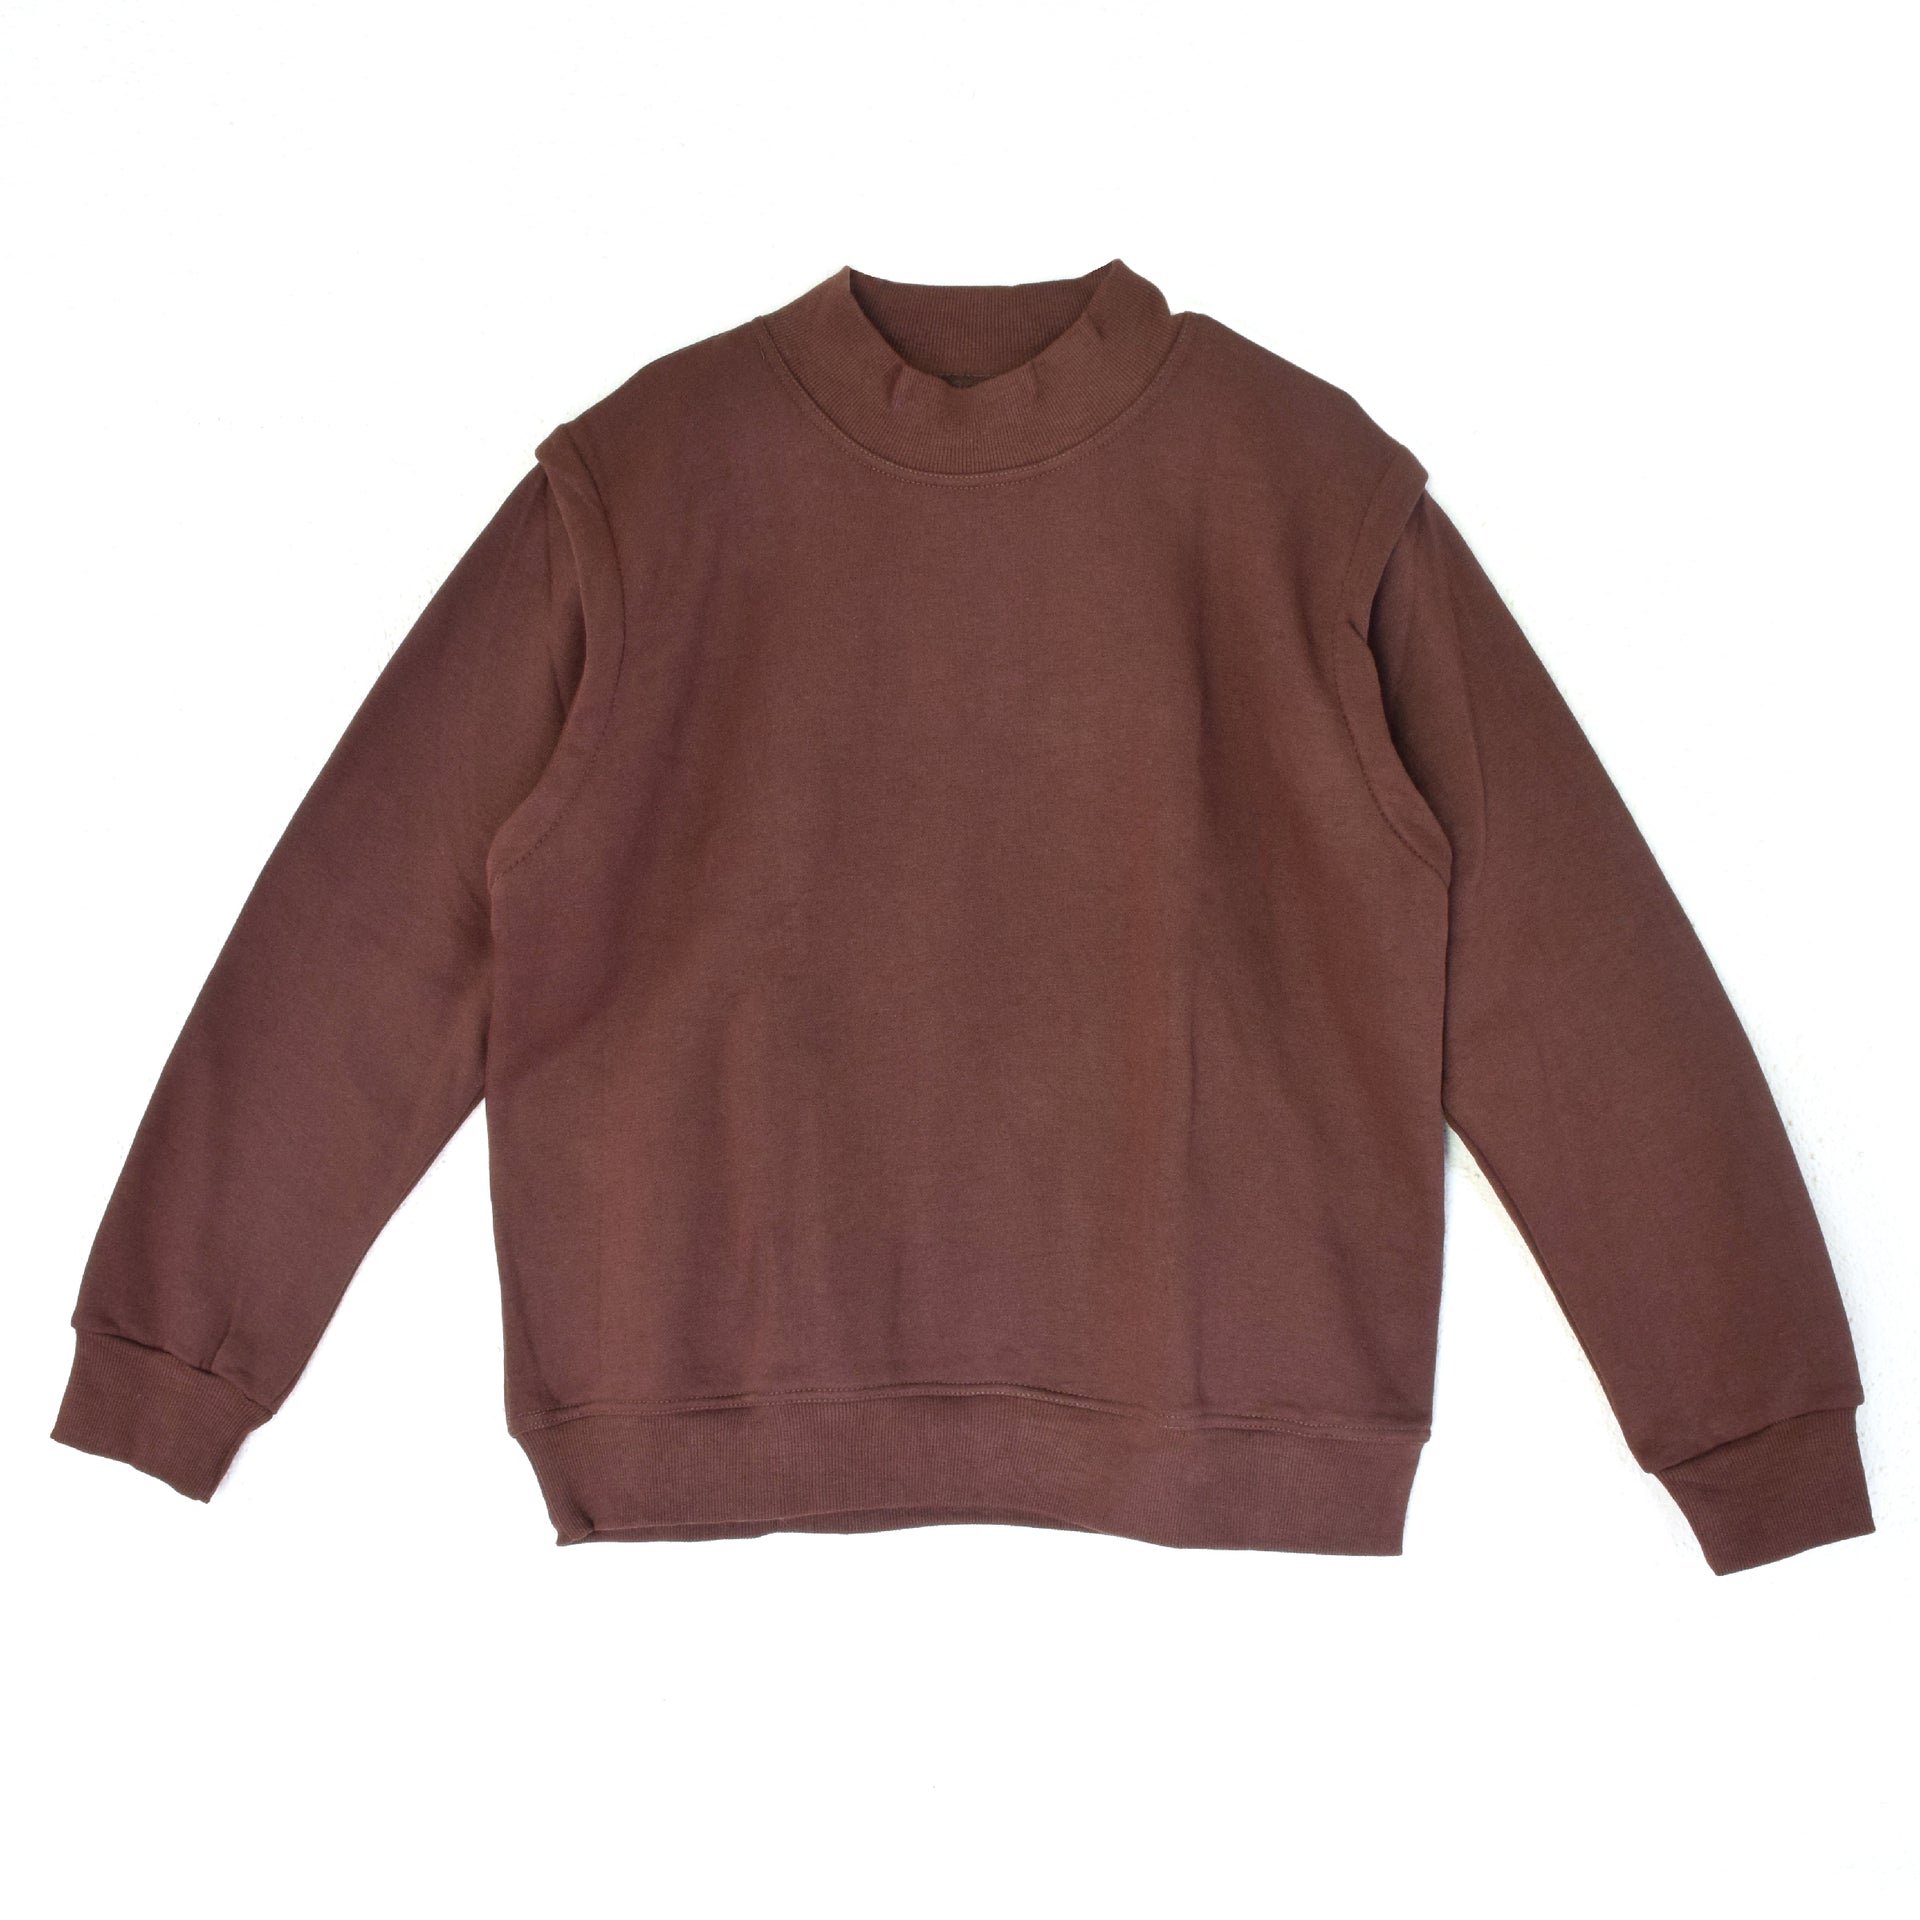 Researcher's Sweatshirt (Brown)